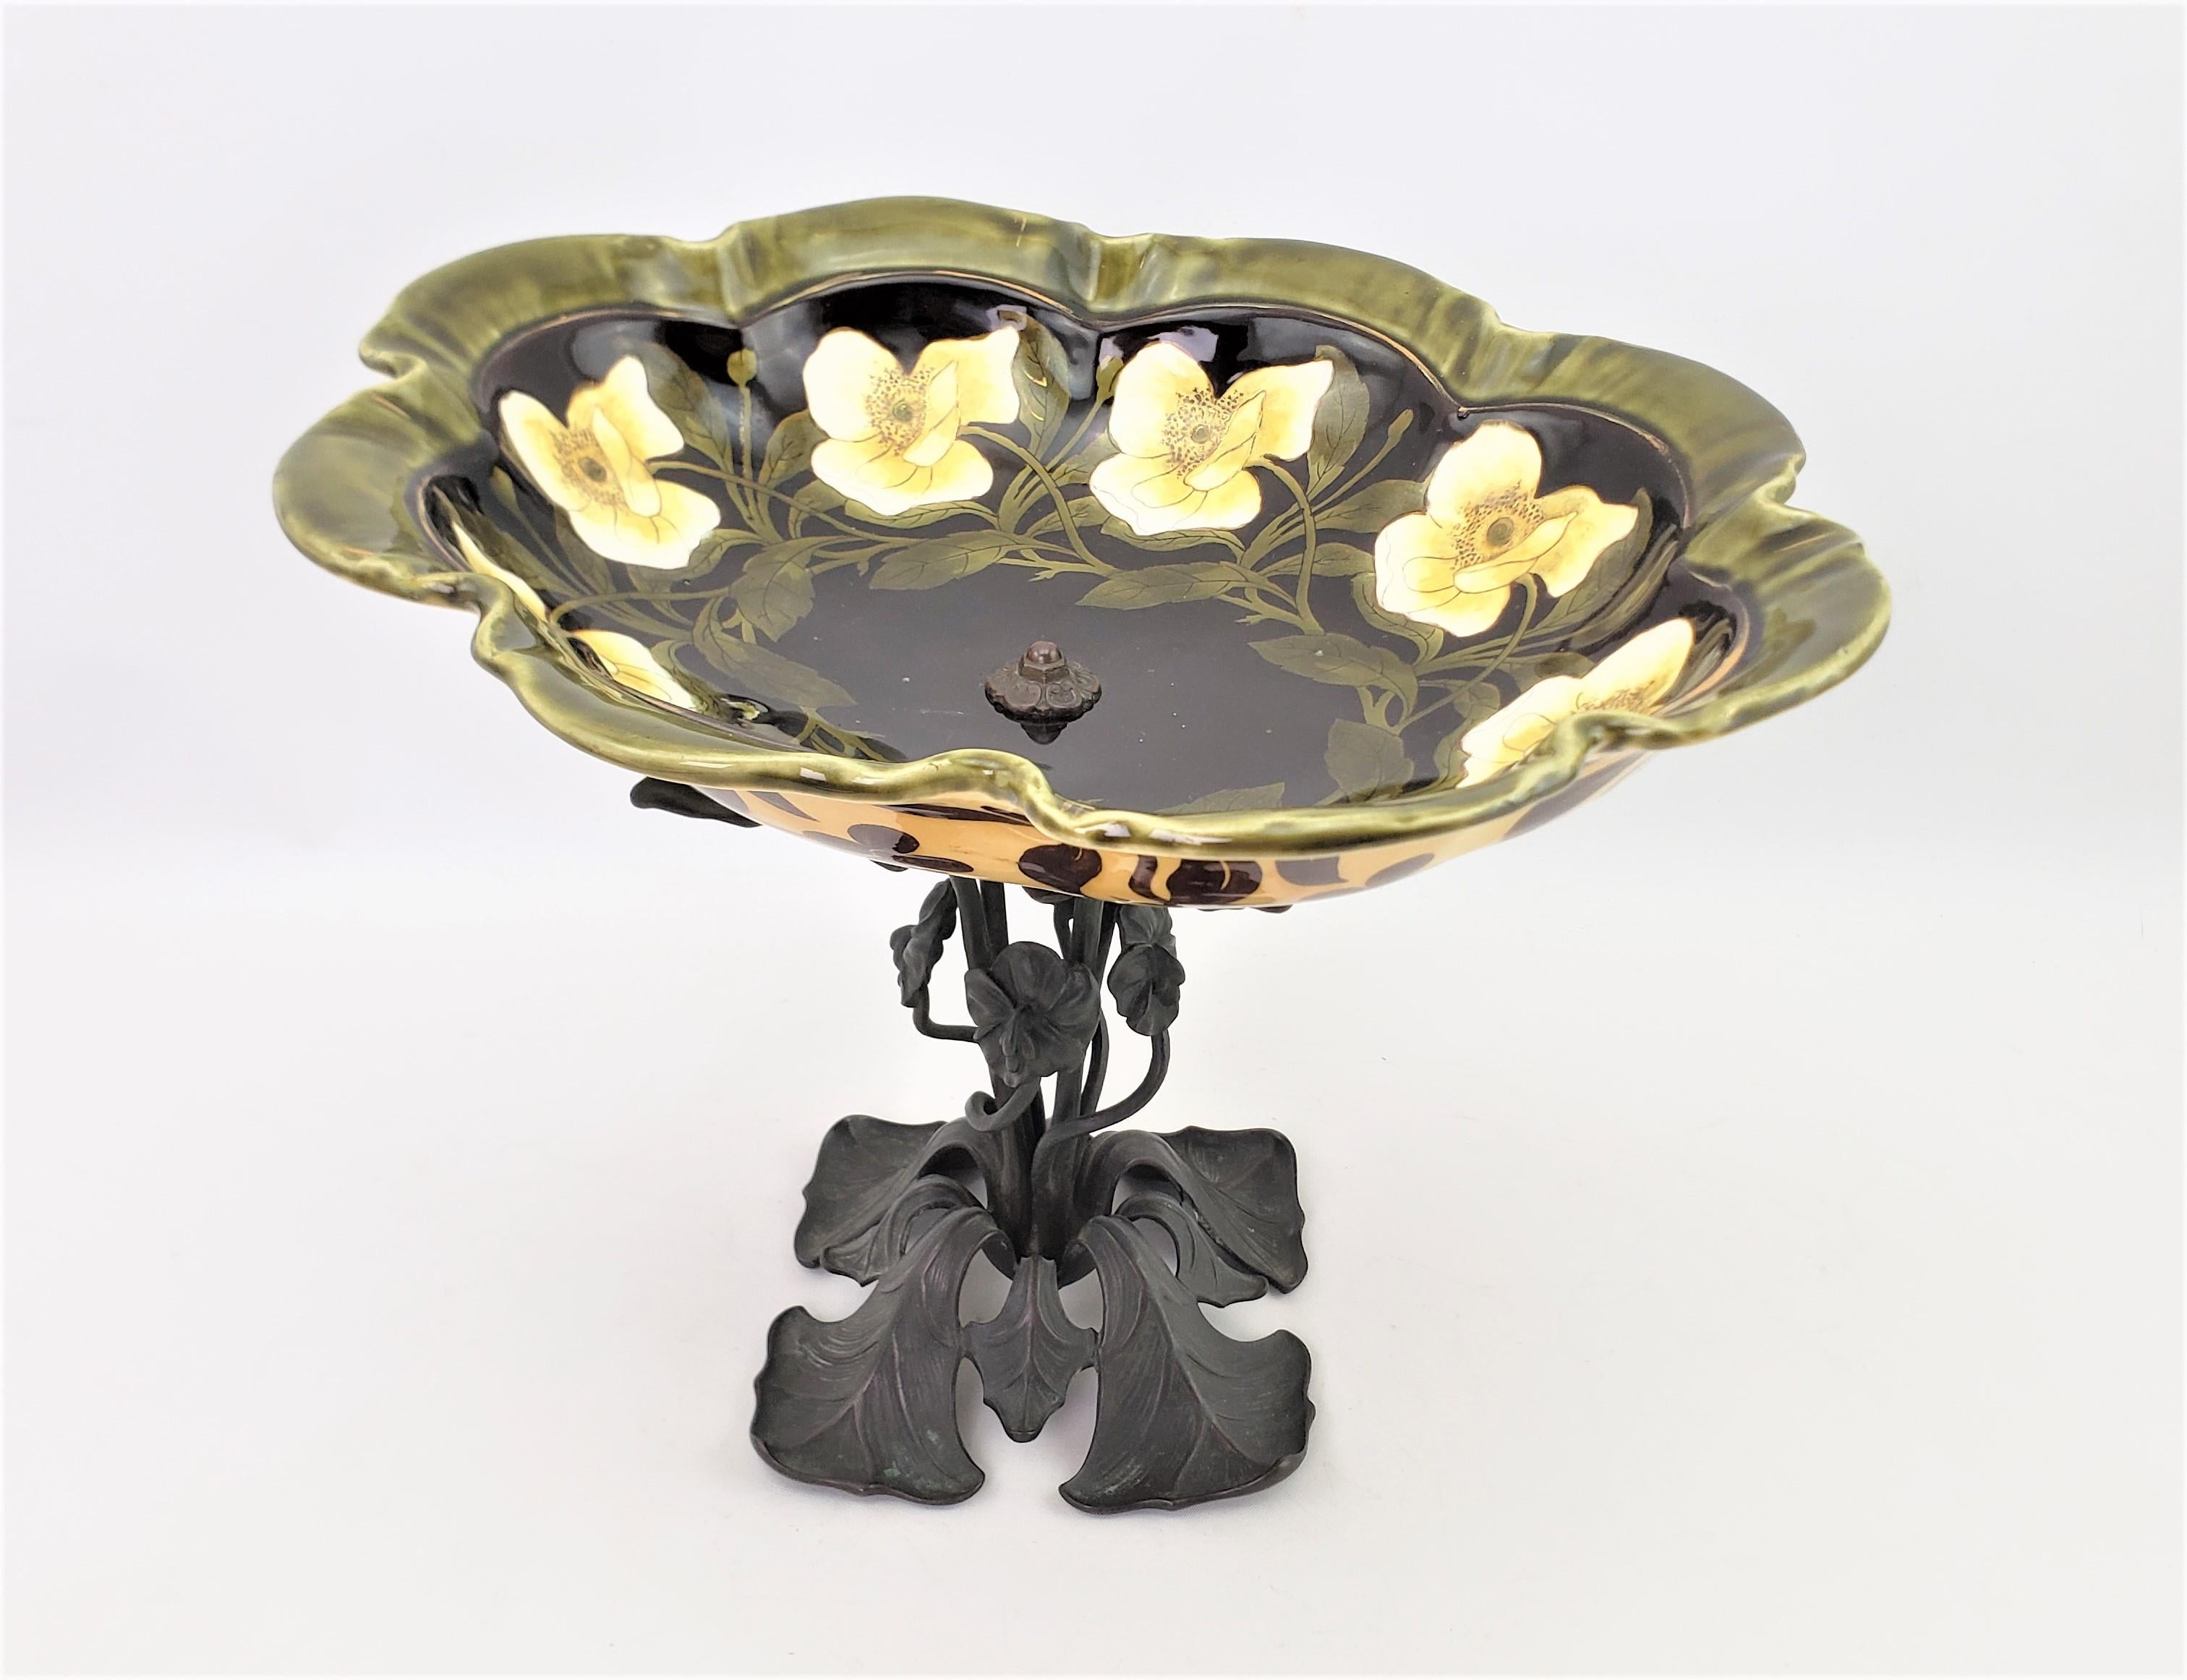 Hand-Painted Antique Art Nouveau Cast Bronze & Ceramic Pedestal Bowl, Tazza or Centerpiece For Sale